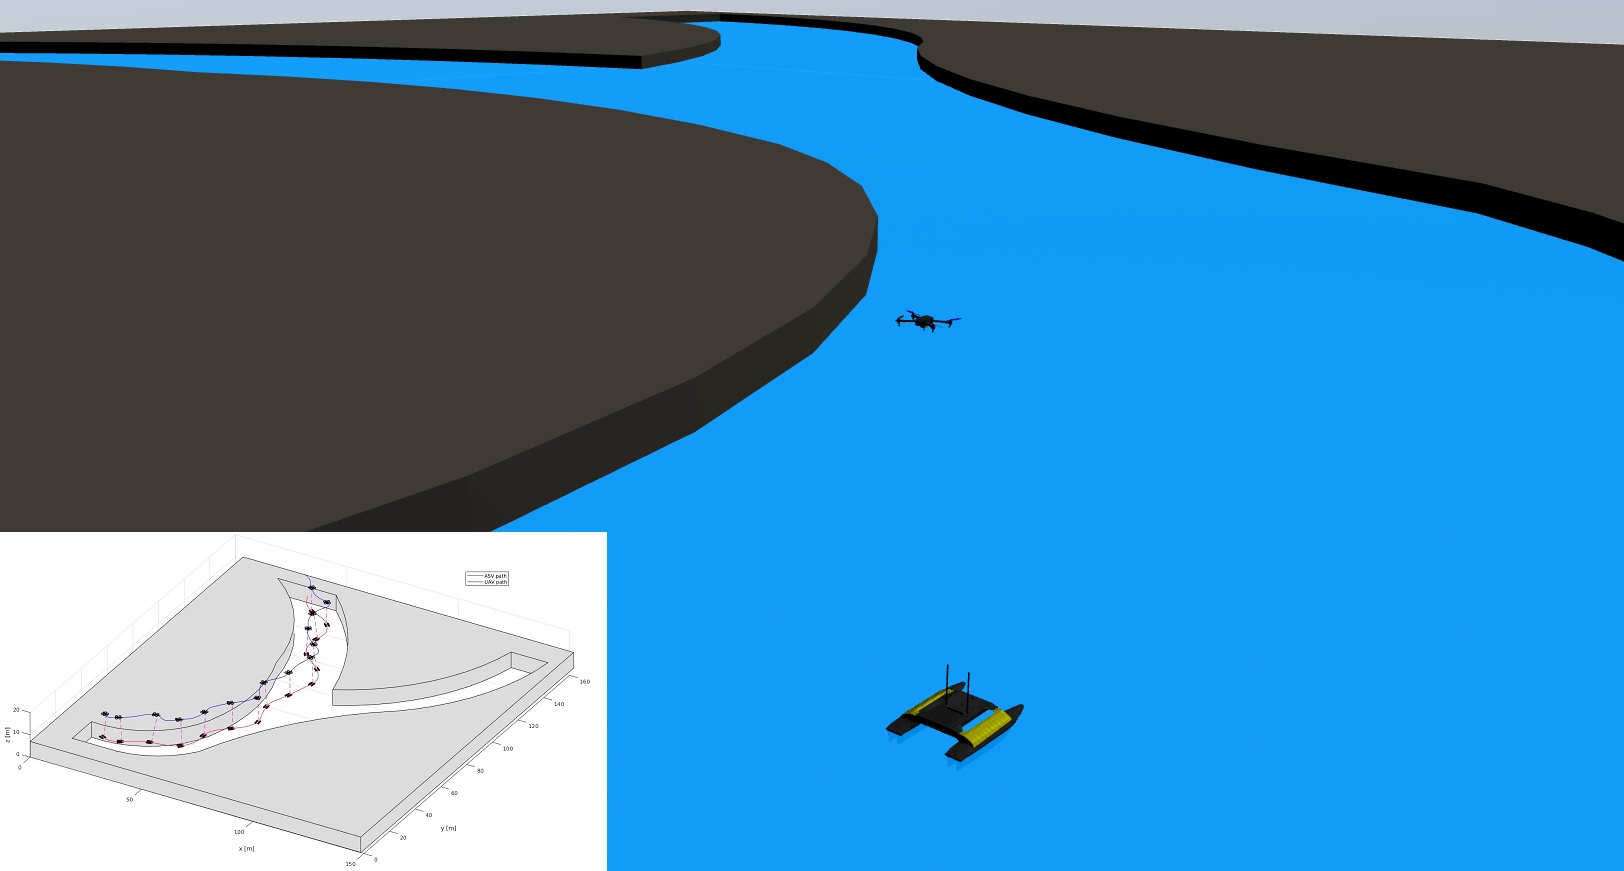 SimulaciÃ³n de un robot marino siendo asistido por un robot aÃ©reo para mejorar la navegaciÃ³n en cauces de agua